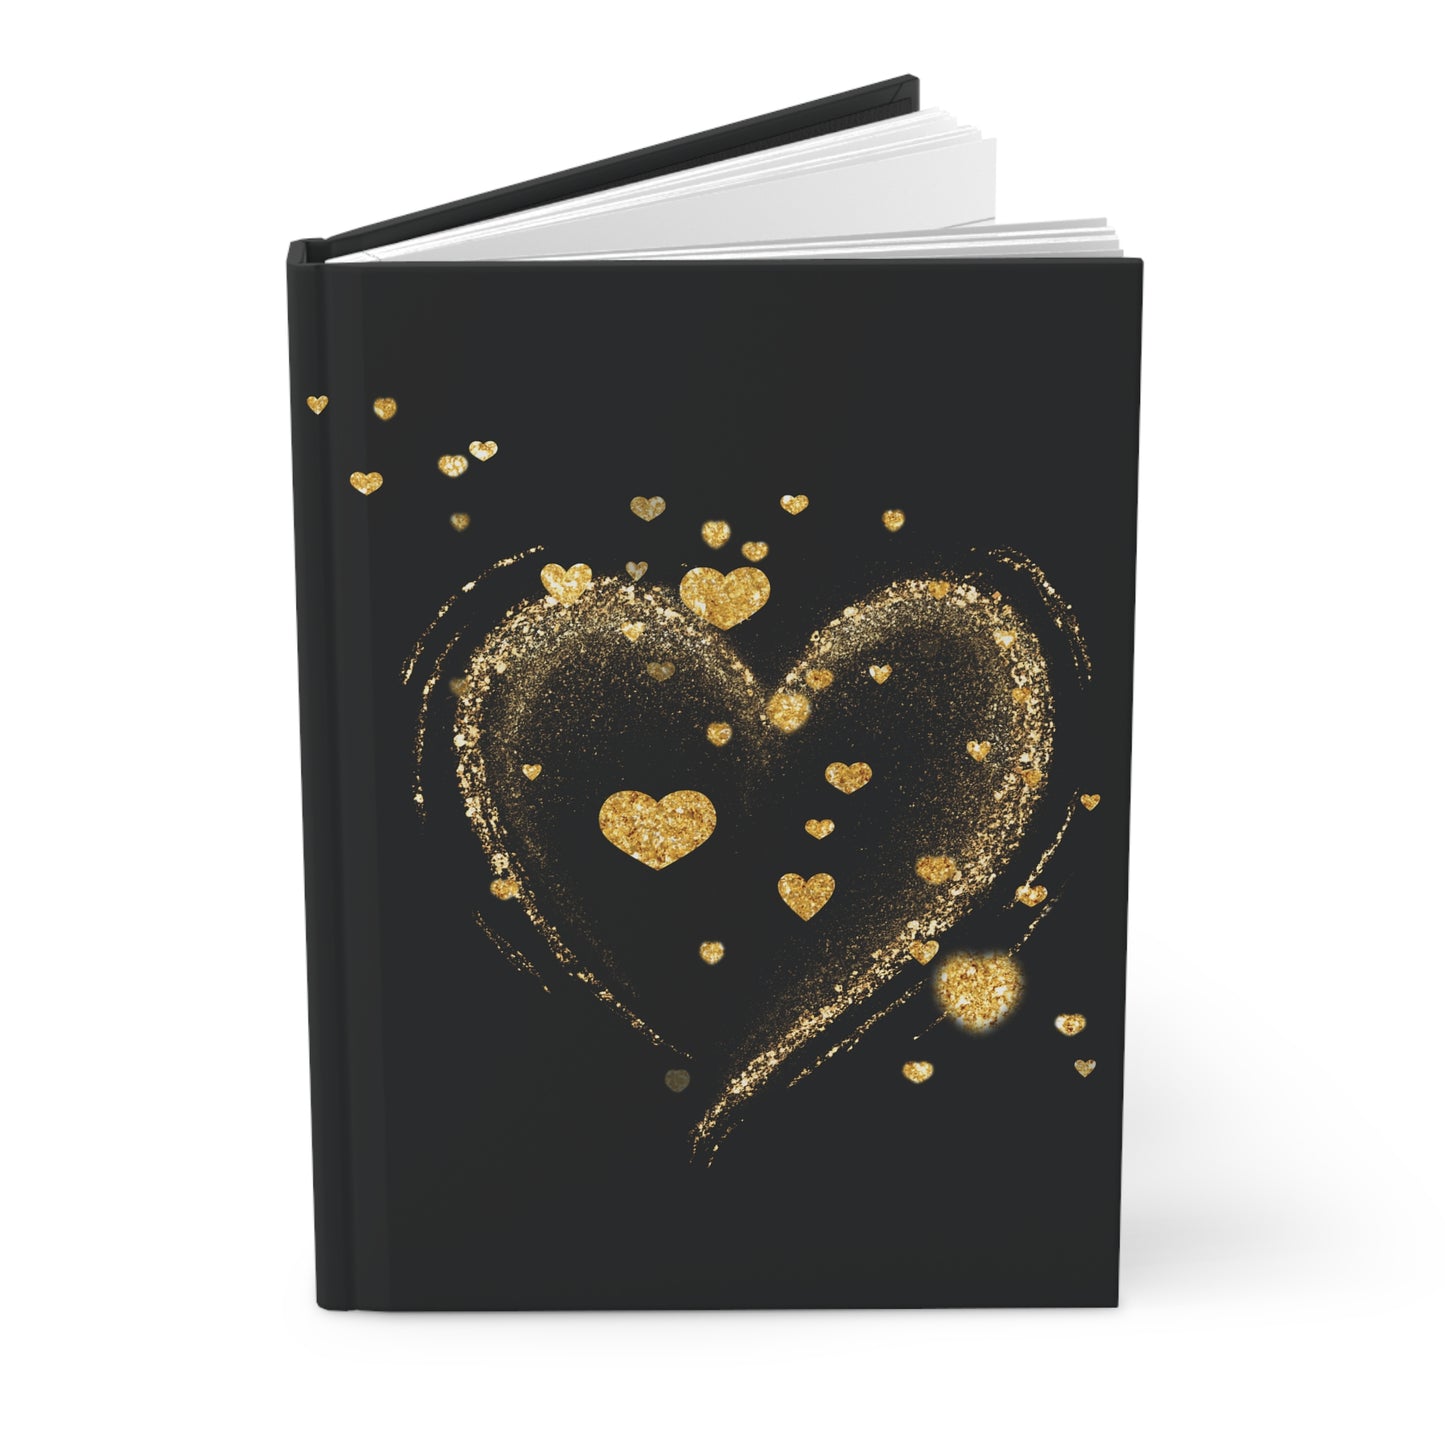 Full of Hearts Hardcover Journal Matte